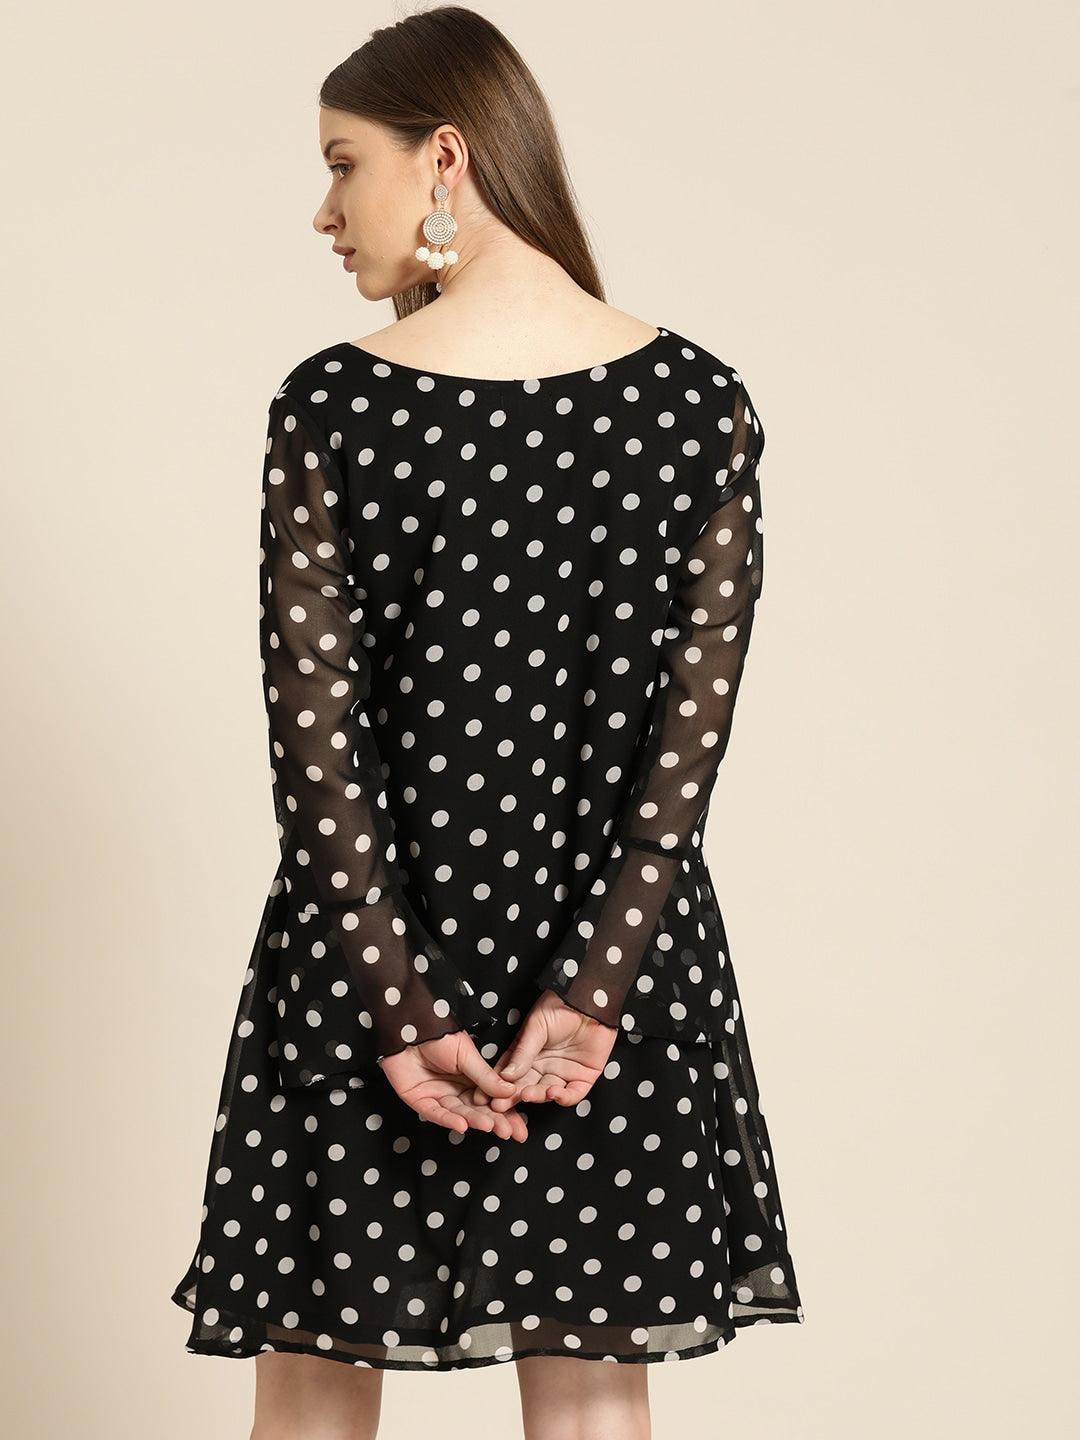 Qurvii Women Black White Polka Dot Print A-Line Dress - Qurvii India